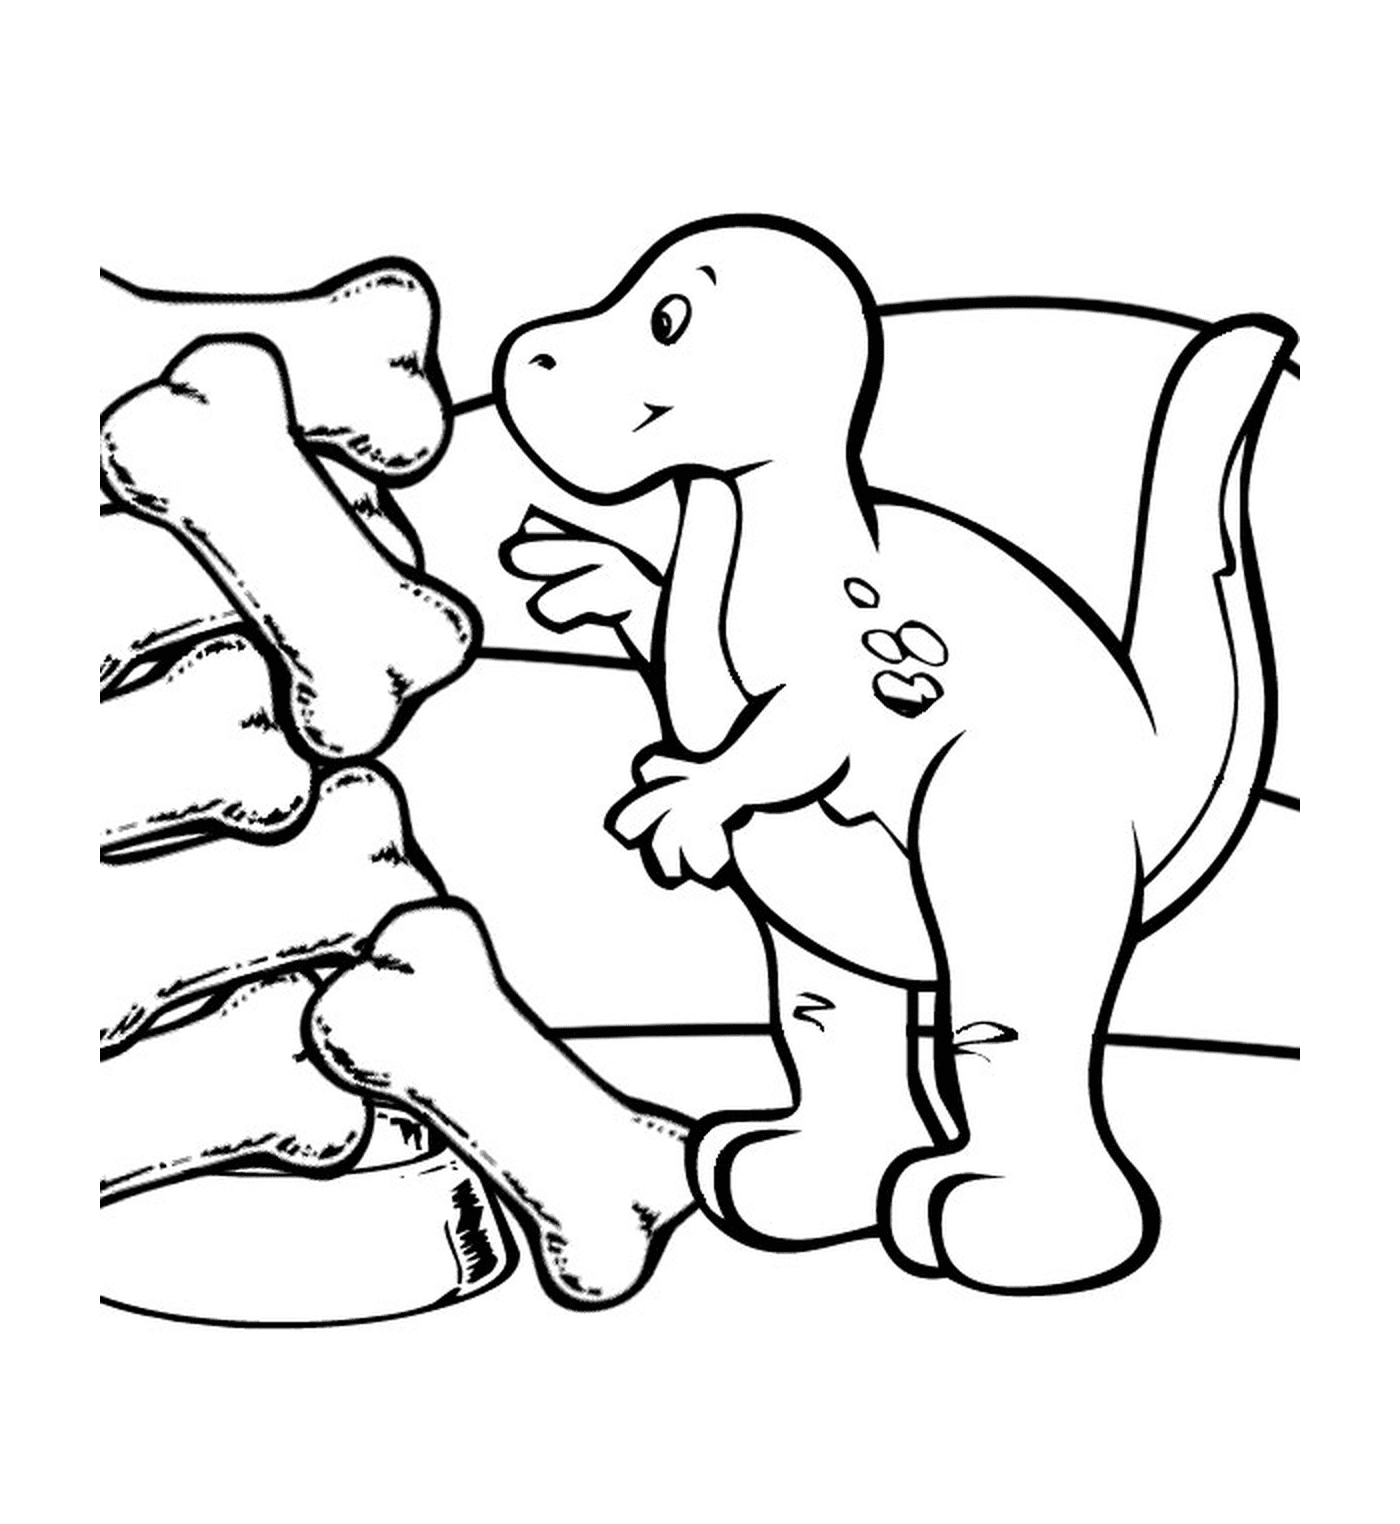  Динозавр рядом с окаменелыми костями 